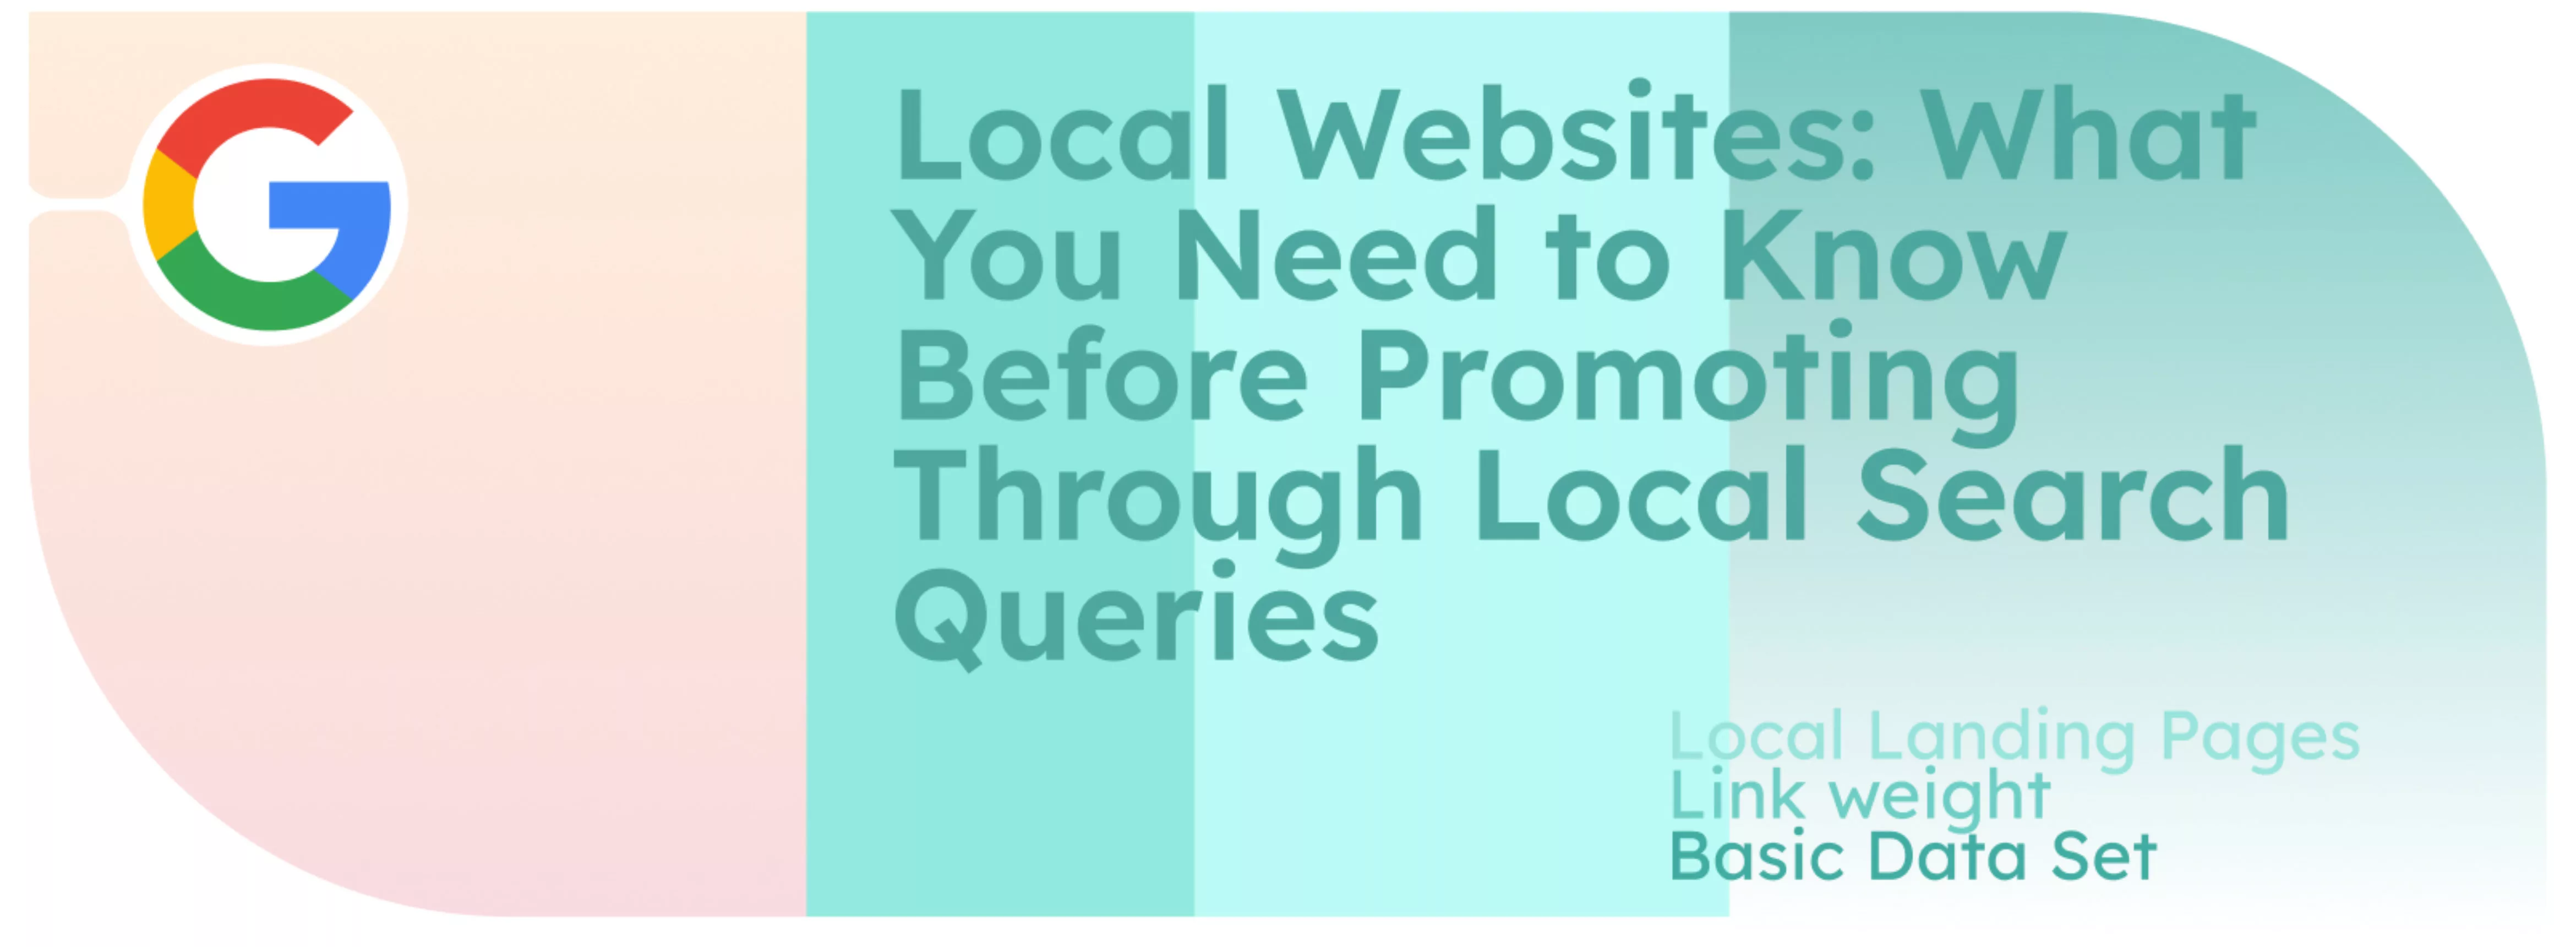 Lokale Websites: Was Sie wissen müssen, bevor Sie über lokale Suchanfragen werben